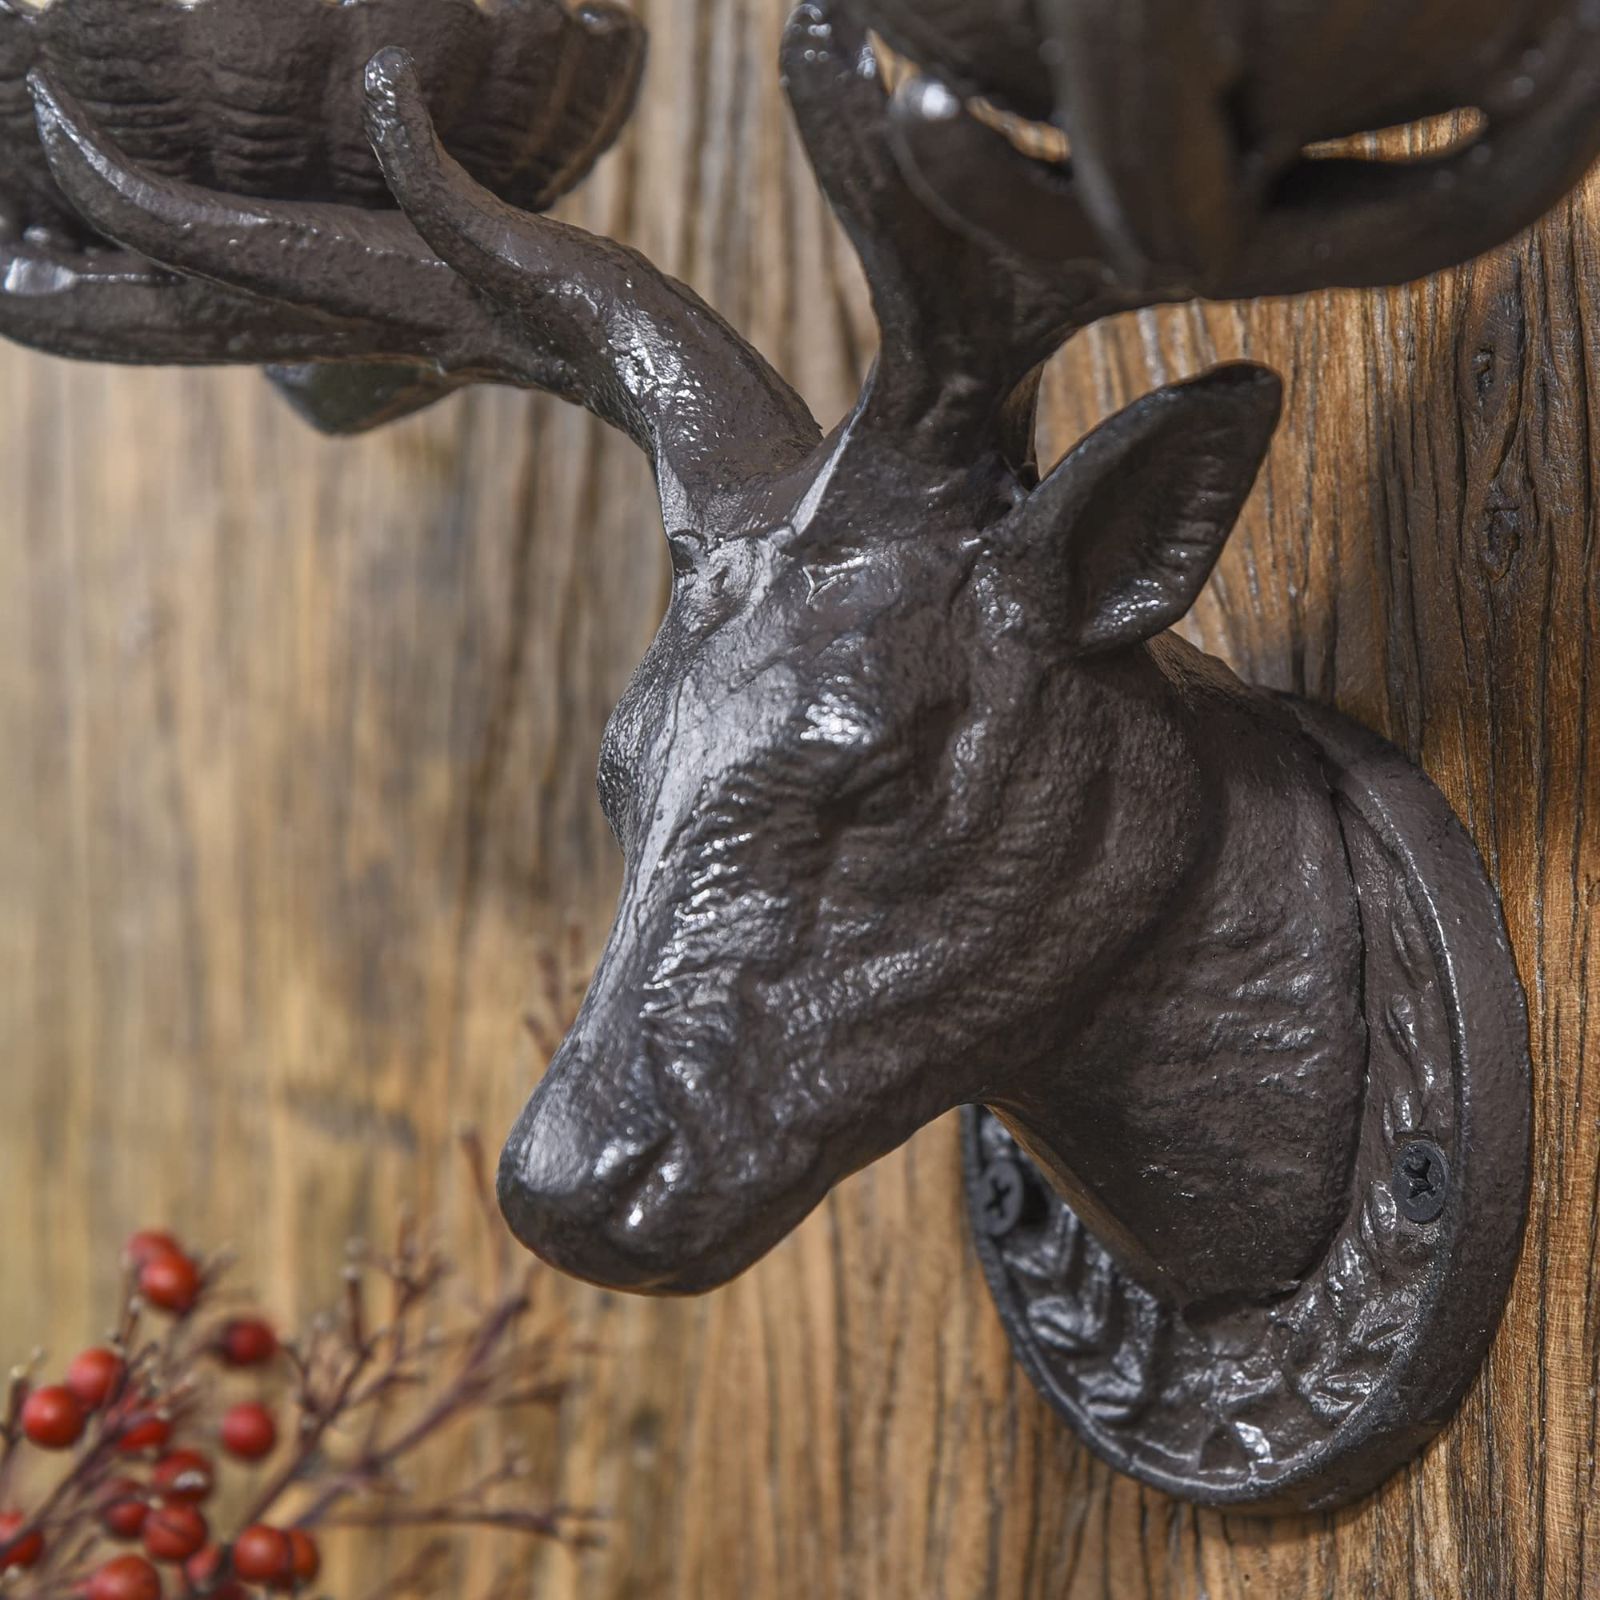 Sungmor キャンドルホルダー 置物 北欧 鋳鉄 飾り物 イギリス風 レトロ